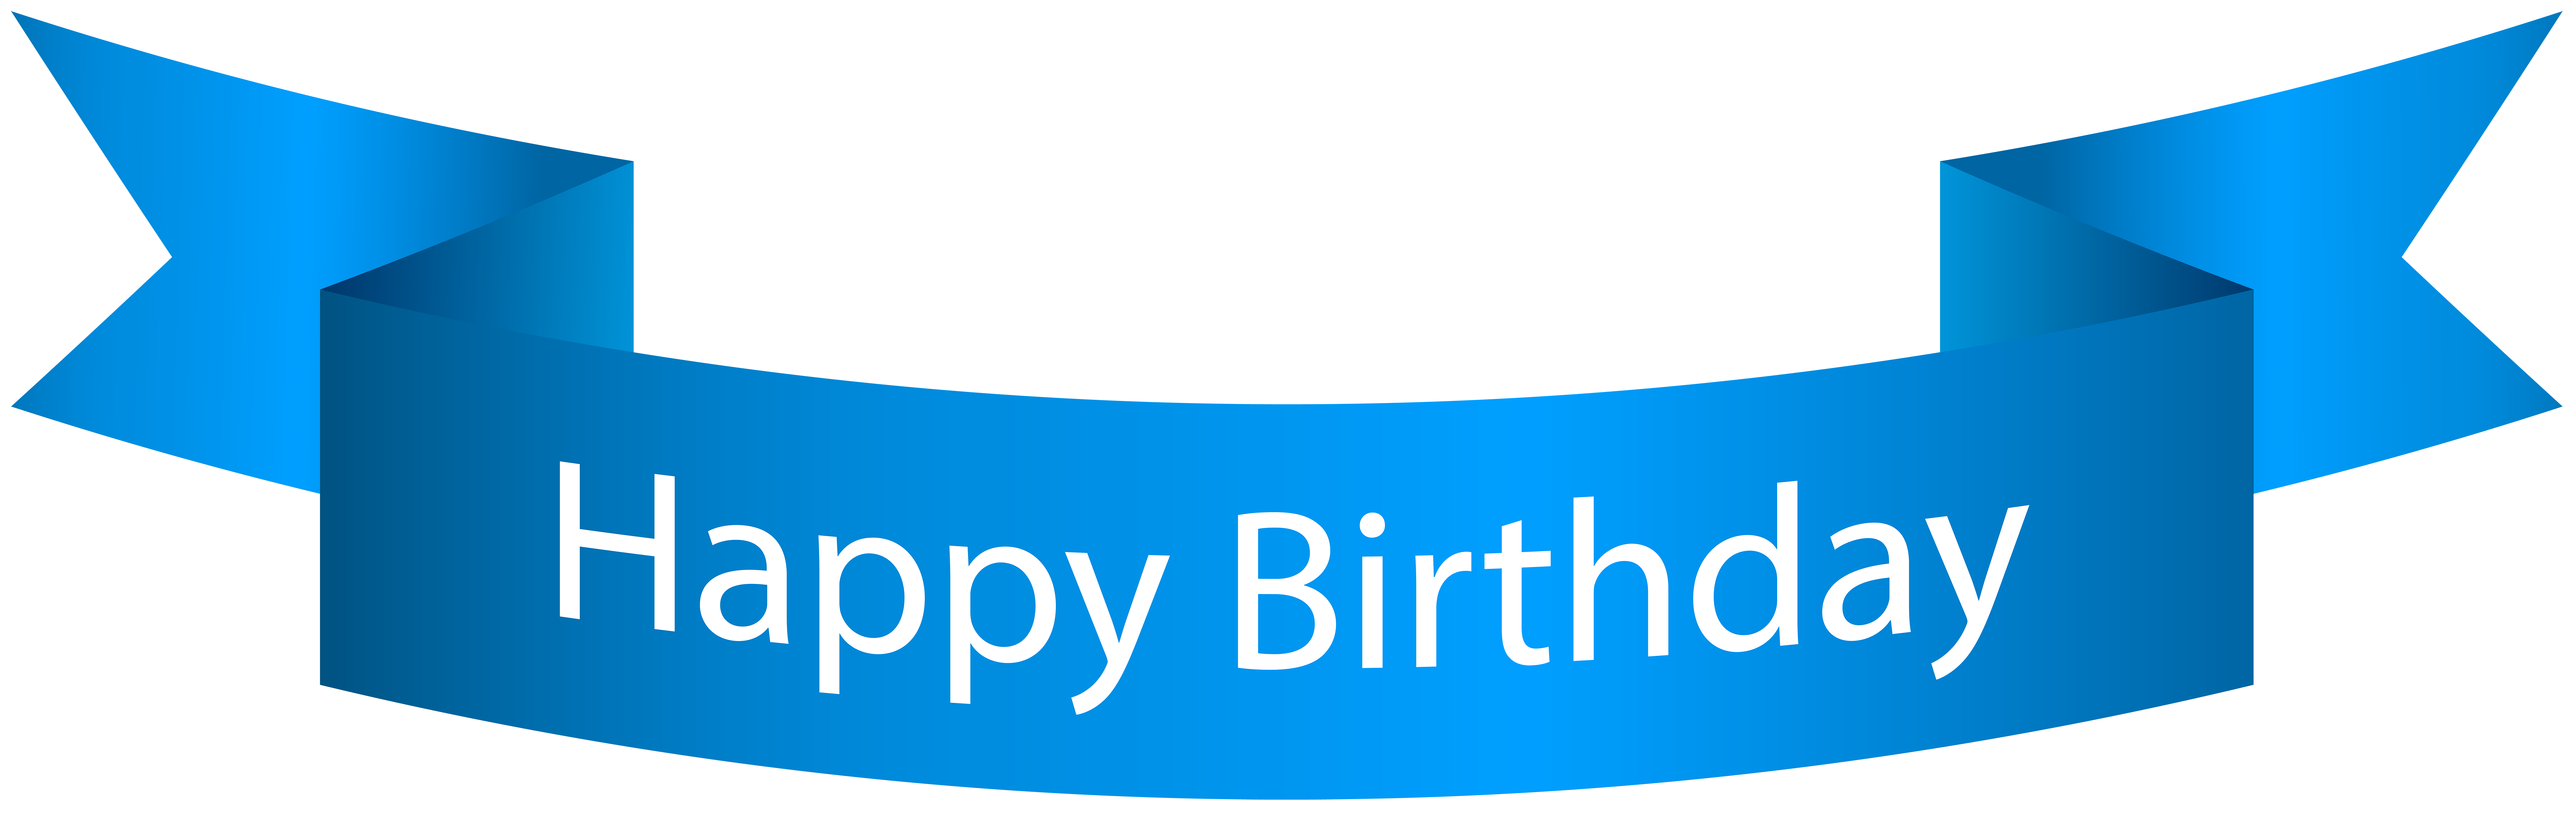 Birthday Wishes Banner Design